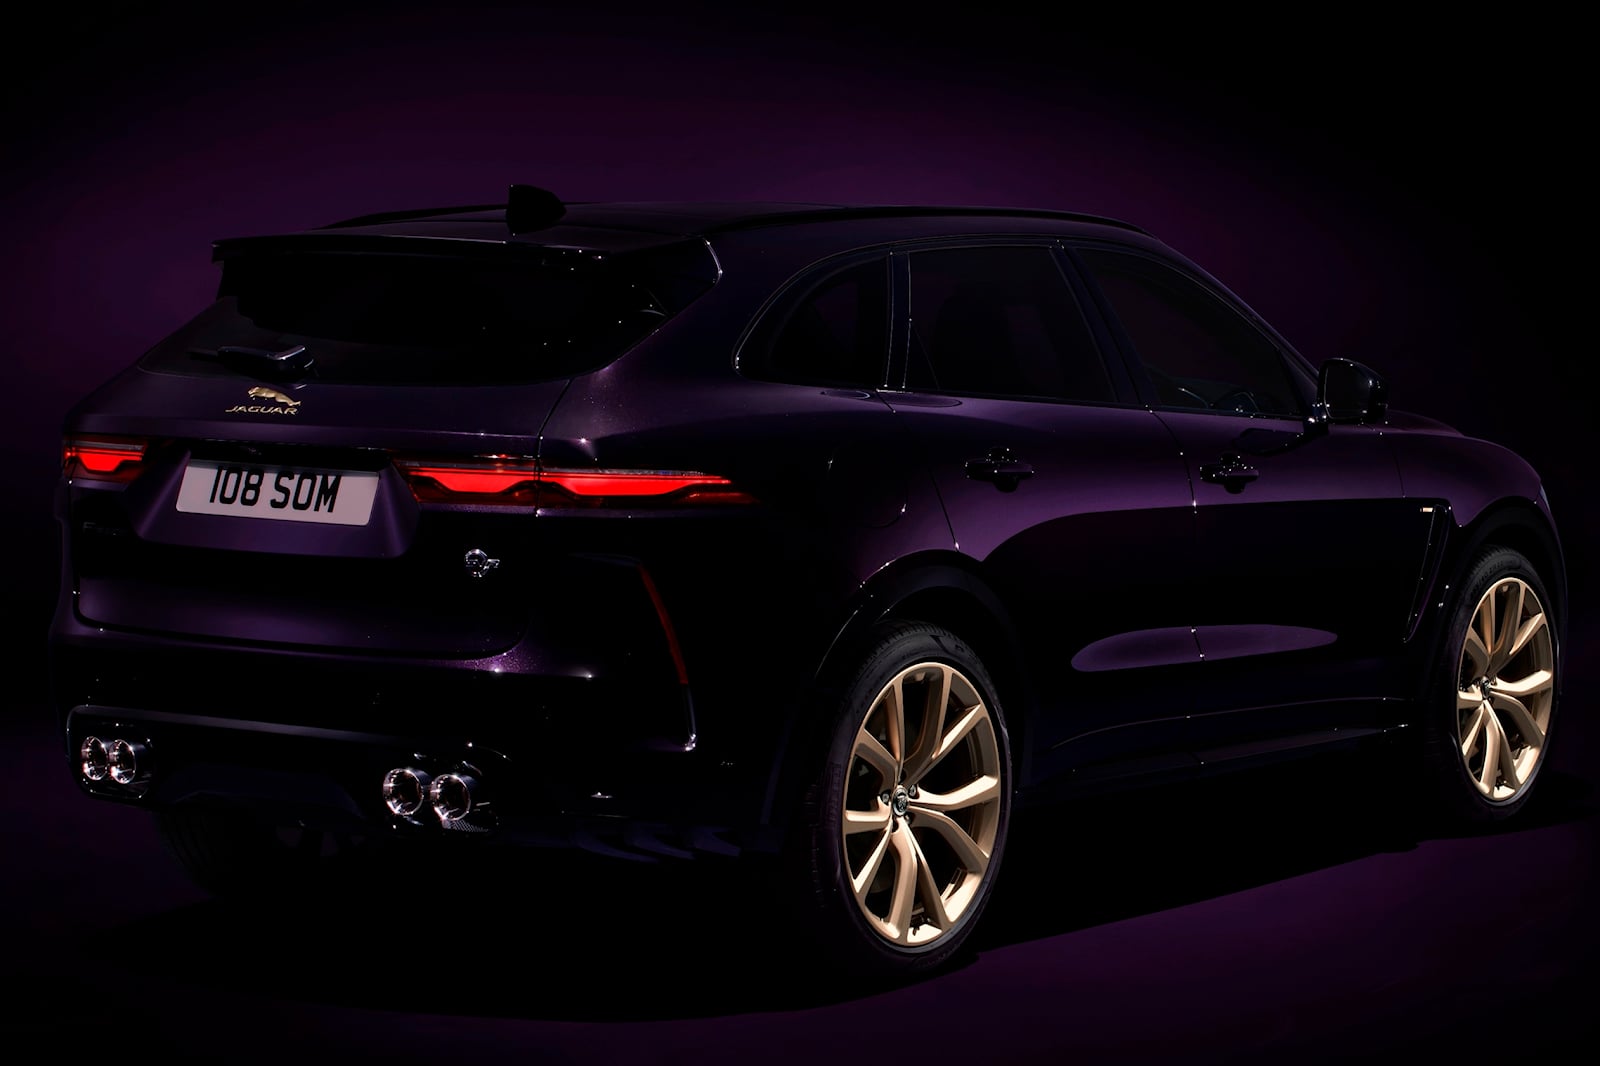 «Фестиваль скорости в Гудвуде всегда являлся одним из самых ярких событий нашего календаря, и то, что мы можем представить три глобальных динамических дебюта на мероприятии этого года, является подходящим отражением темпов развития Jaguar Land Rover.